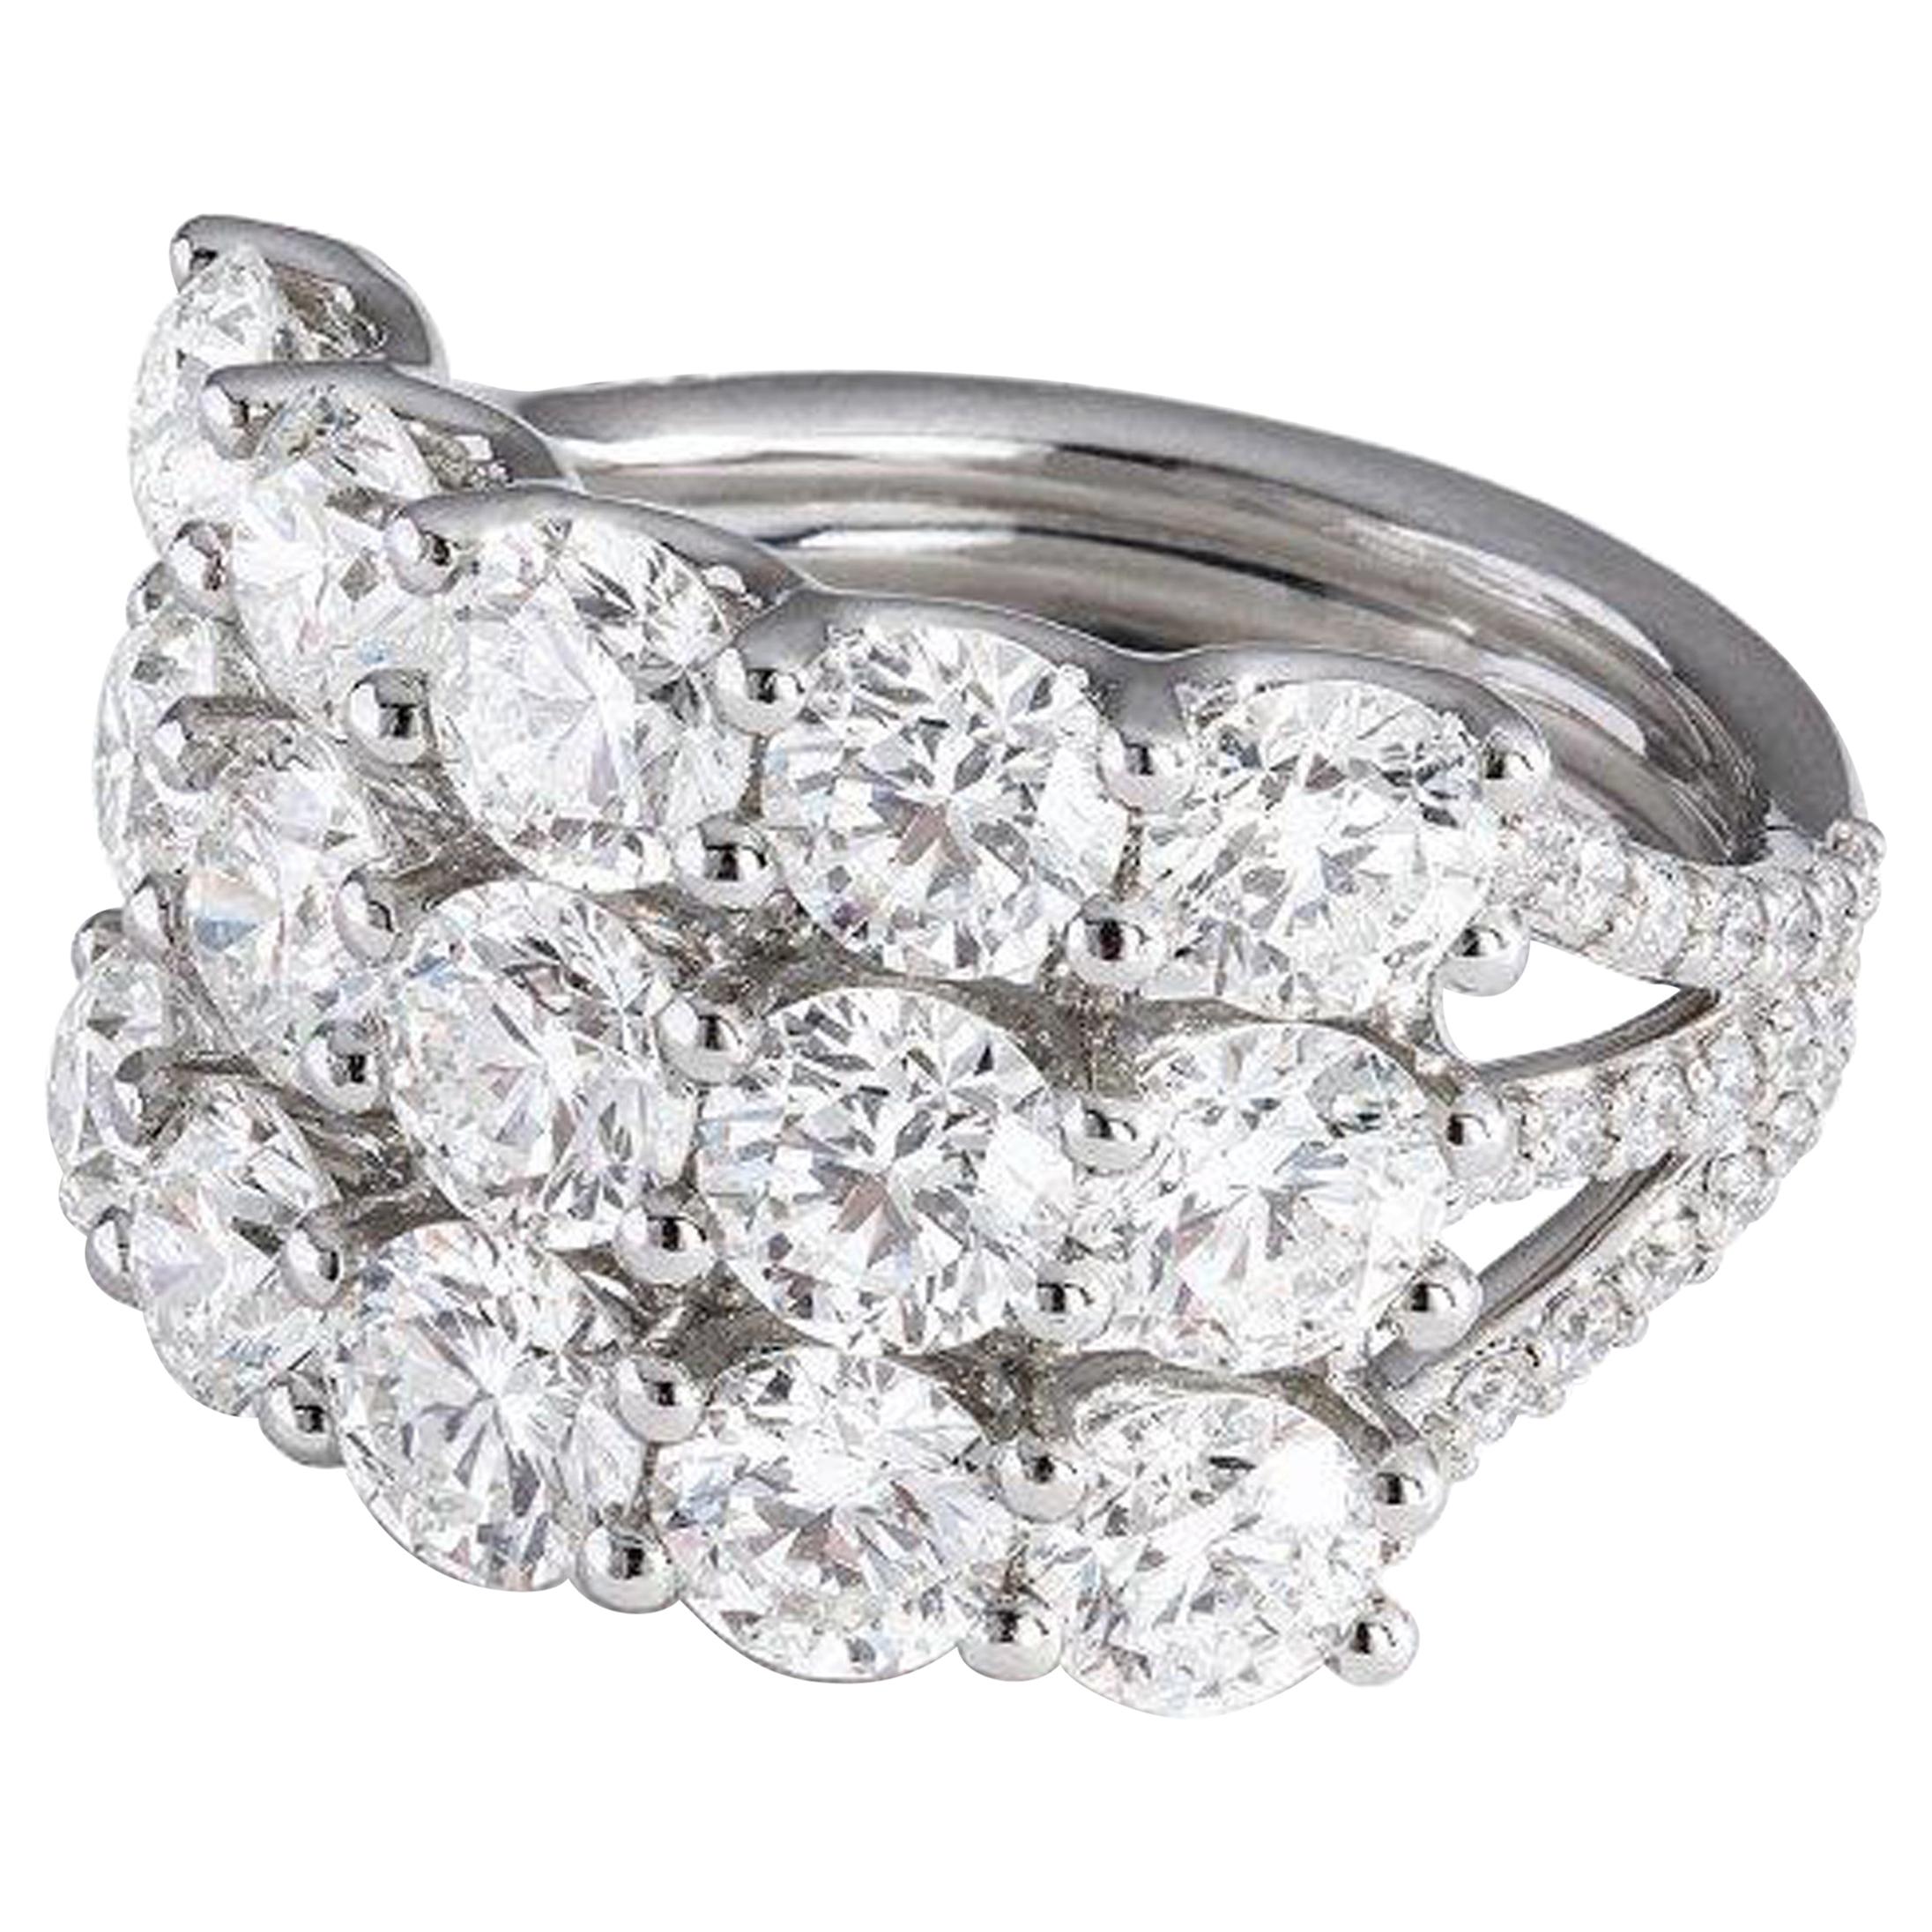 5.37 Carat Three-Row Diamond Ring